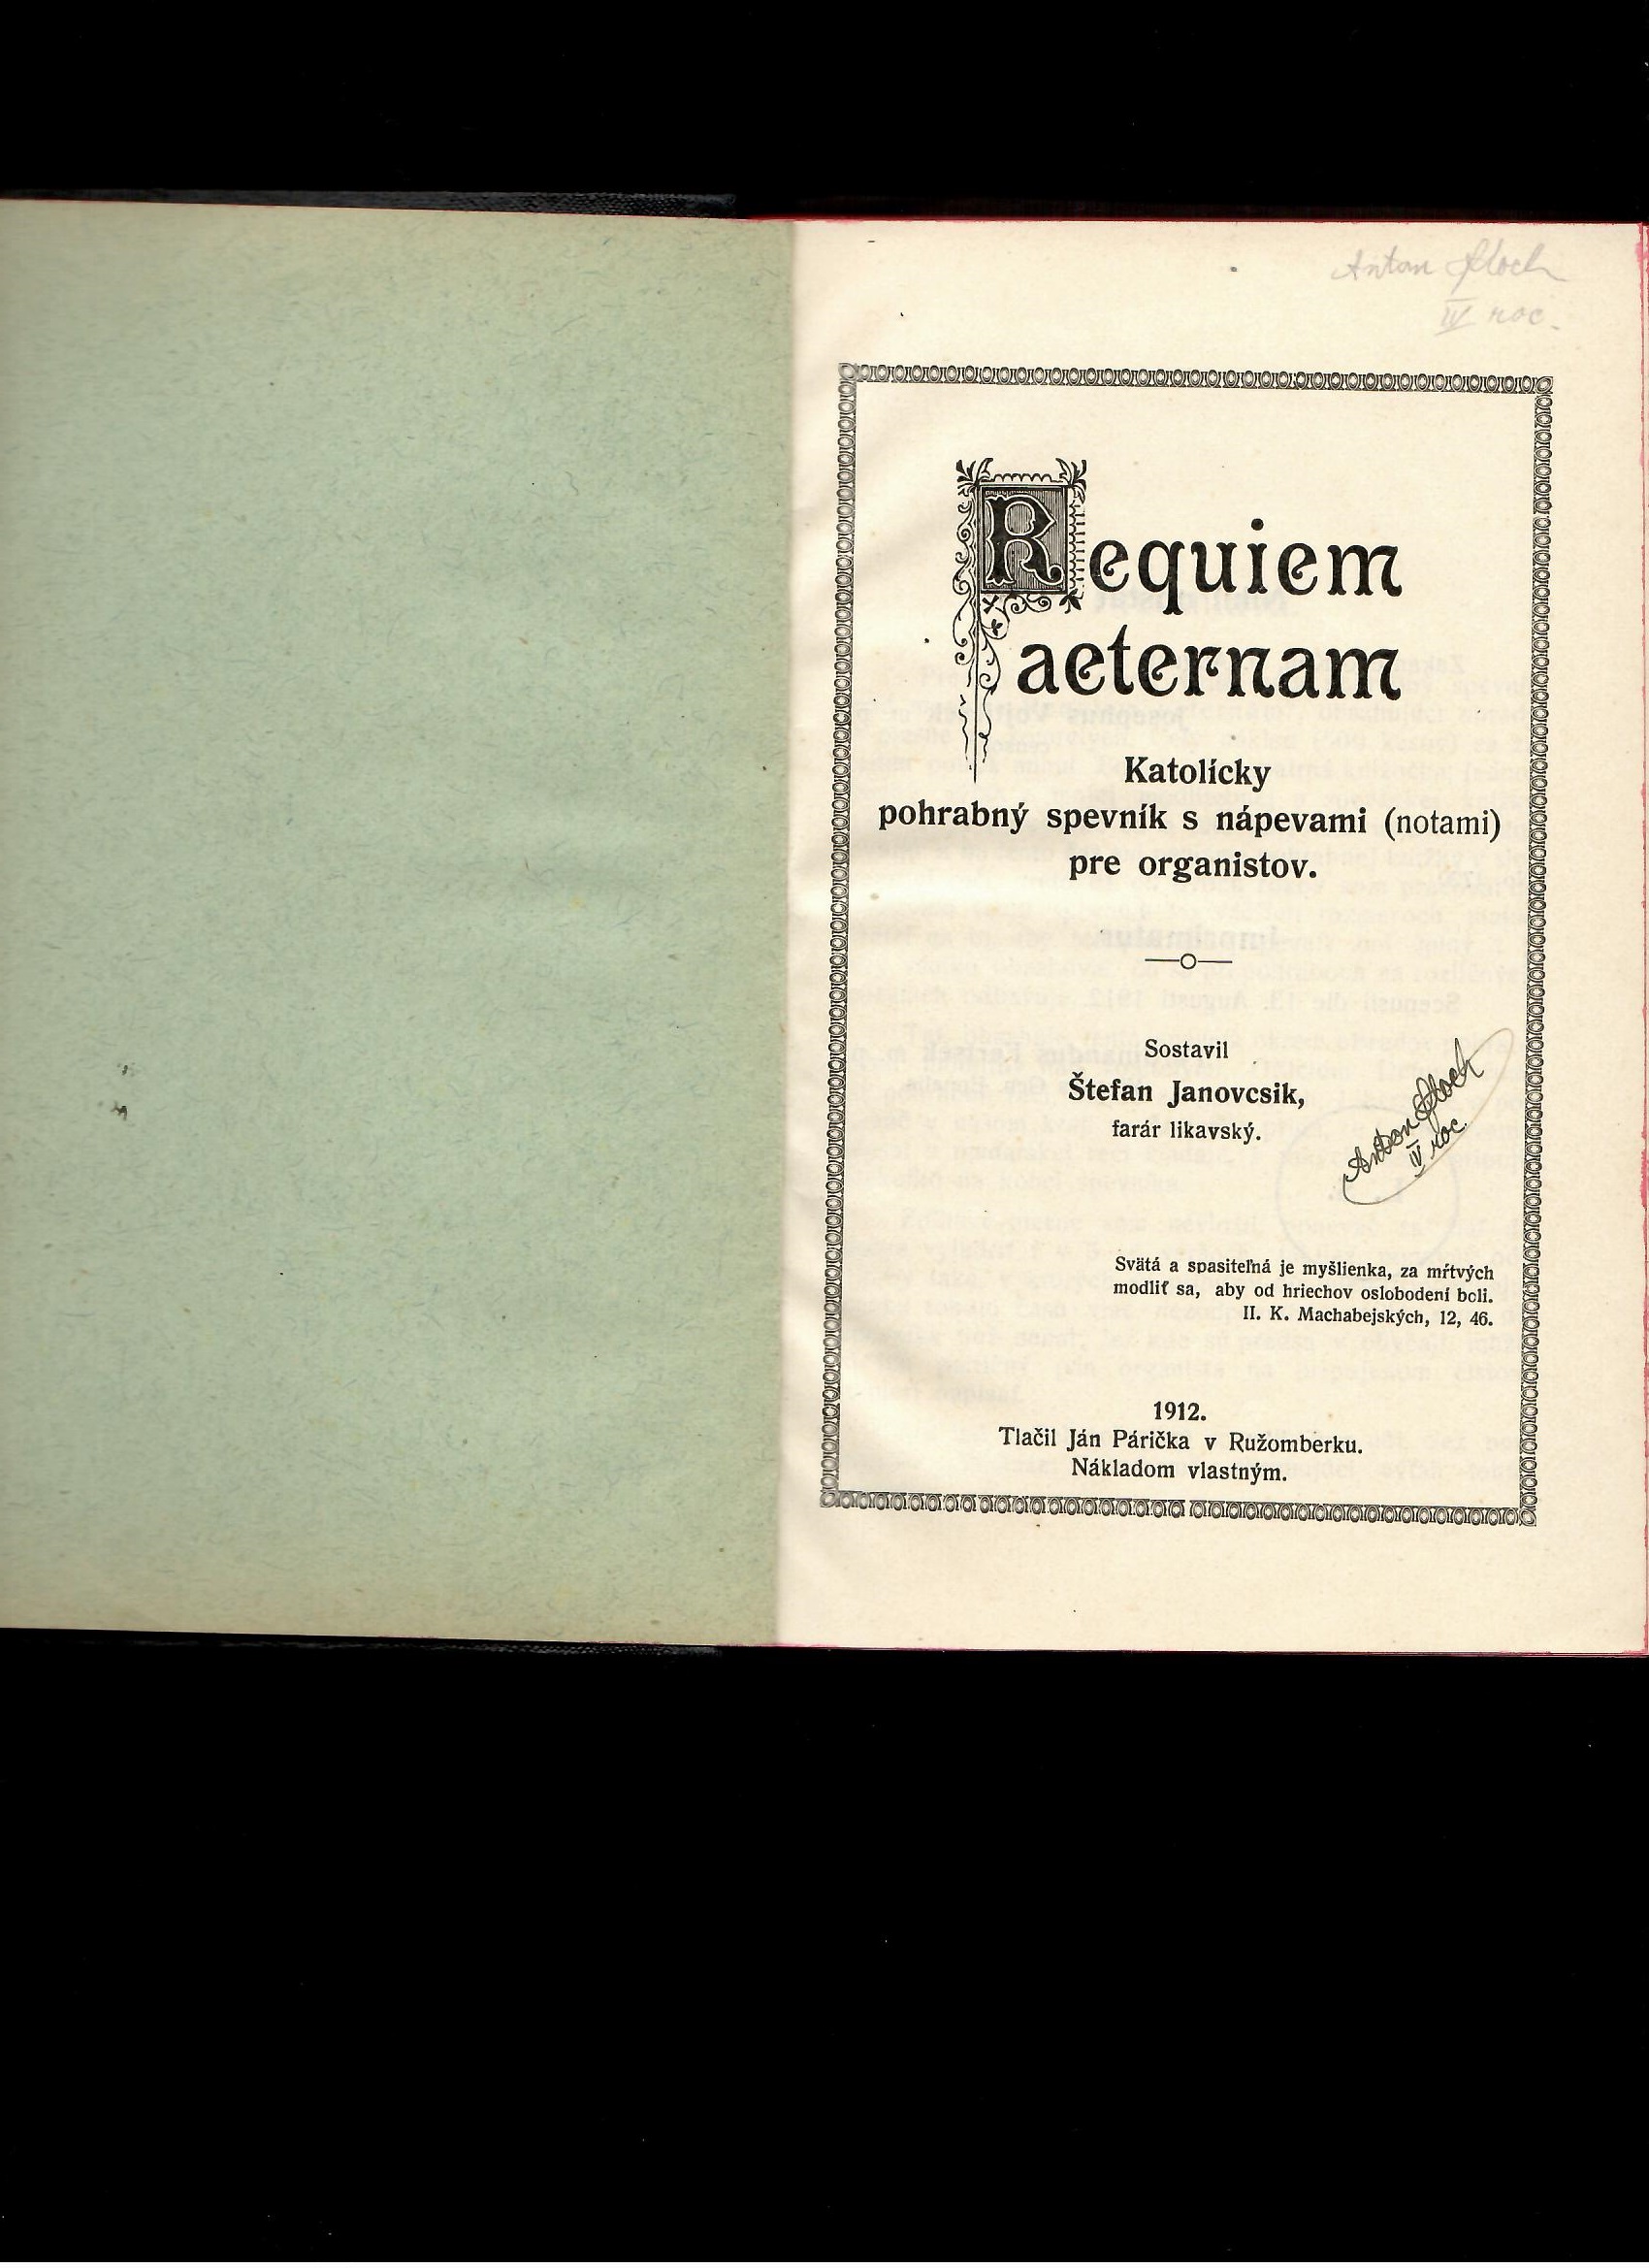 Štefan Janovcsik: Requiem aeternam. Katolícky pohrabný spevník /1912/